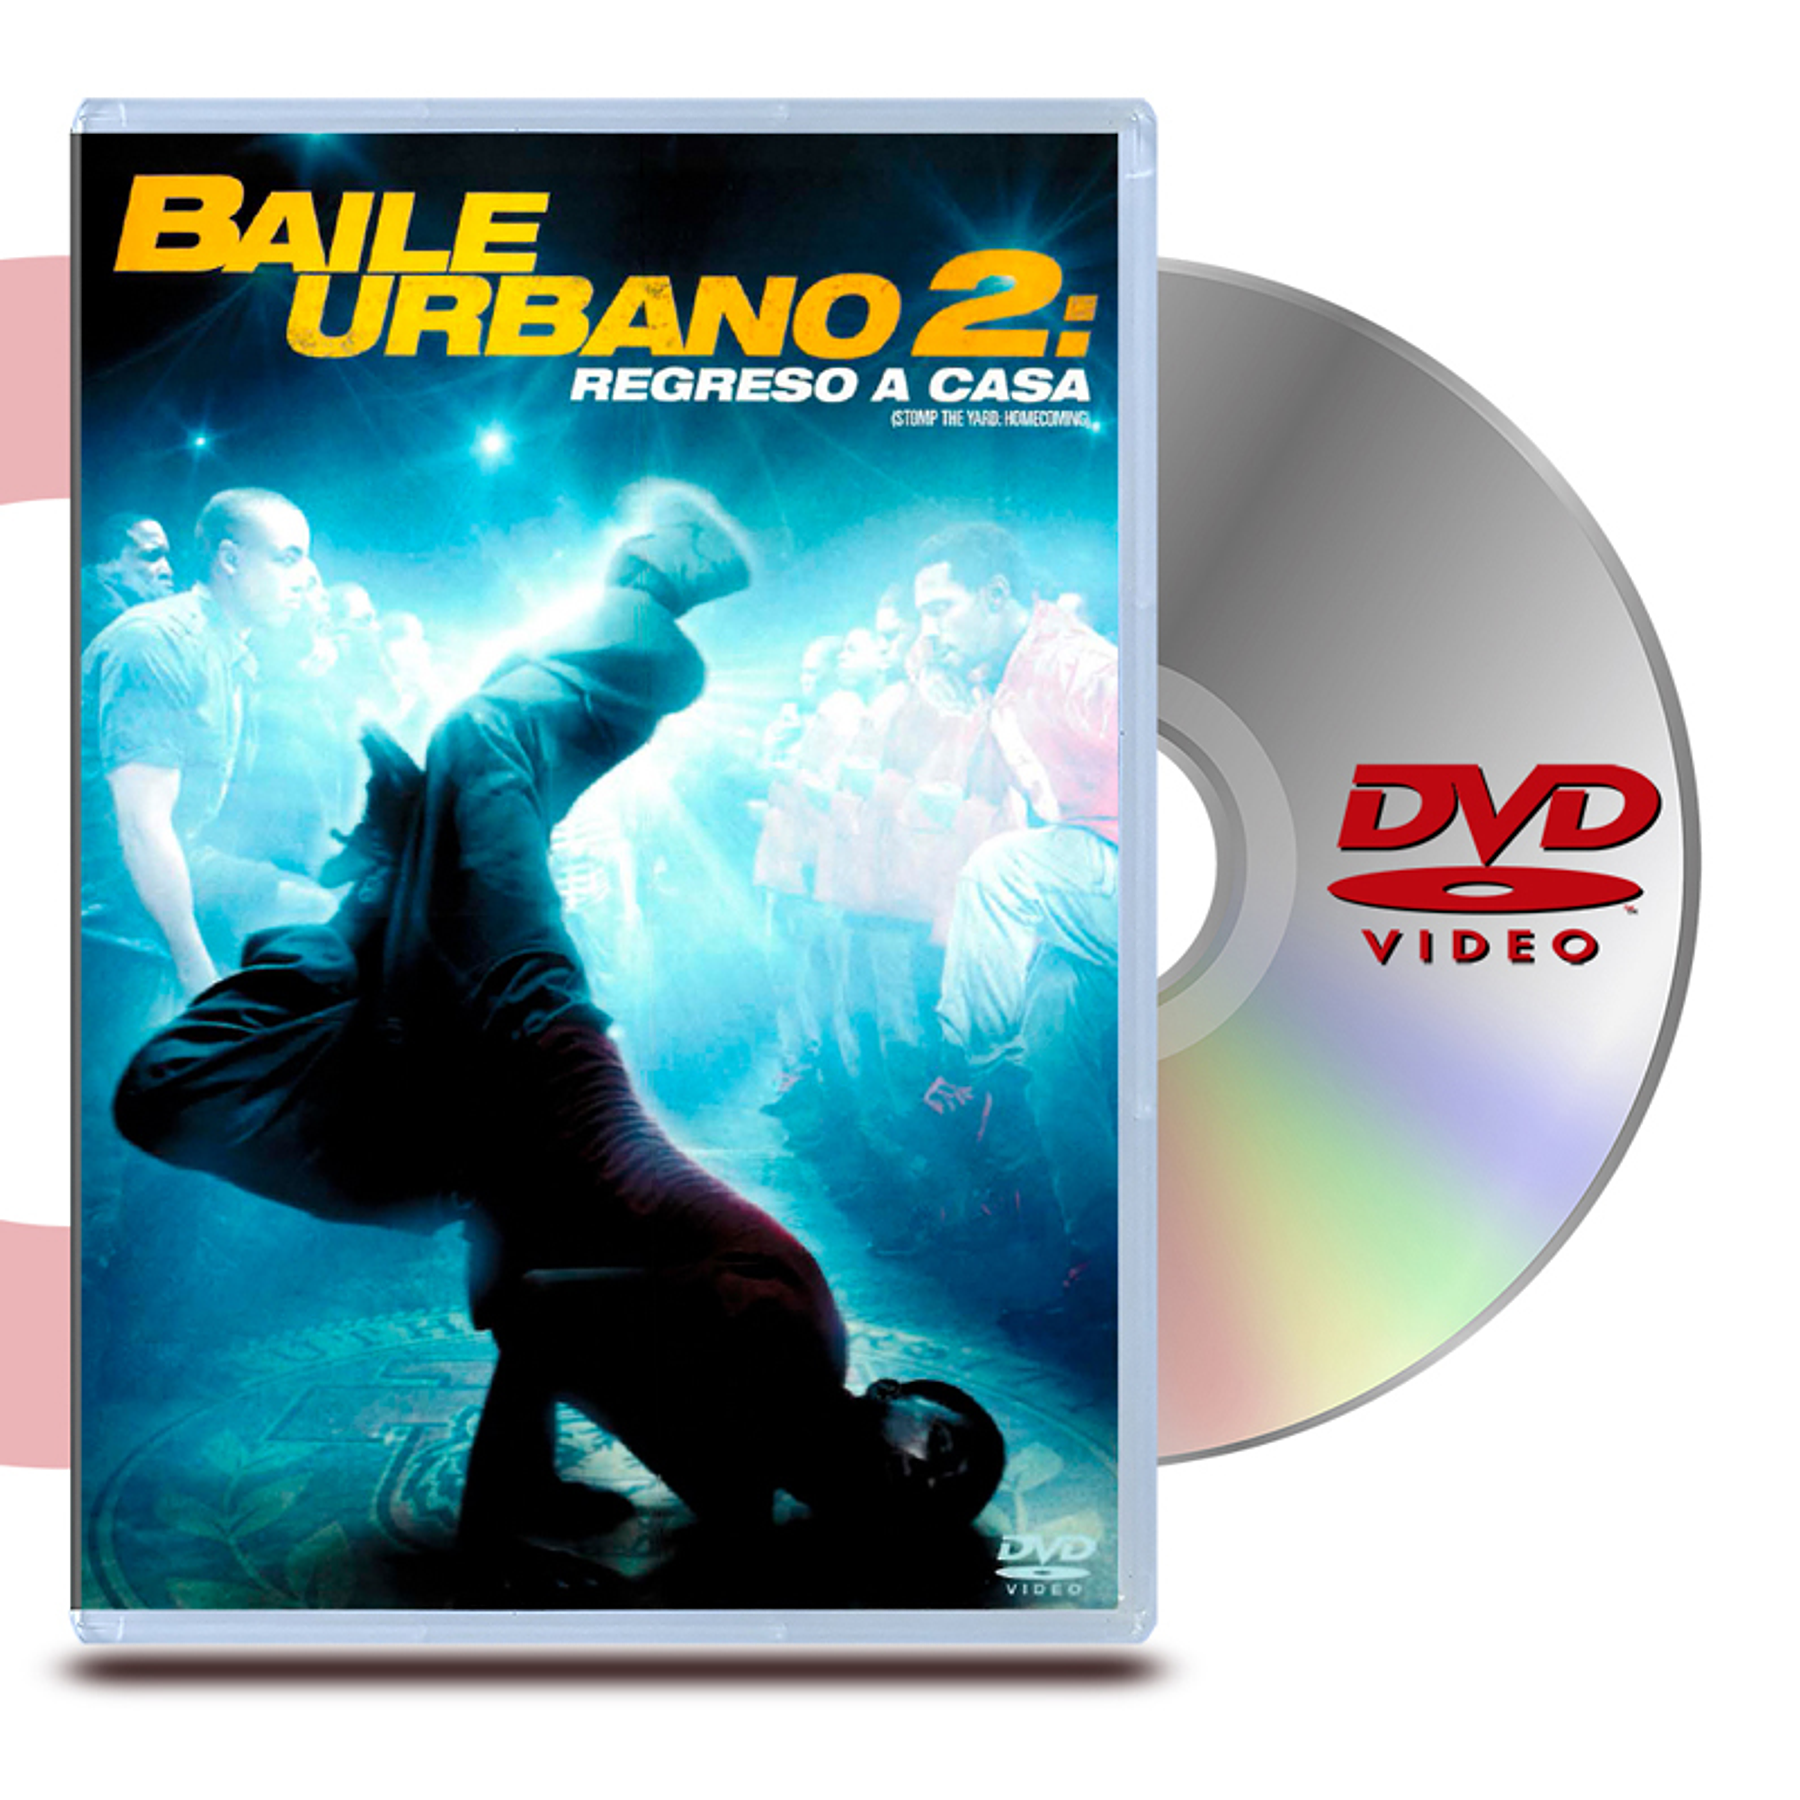 DVD BAILE URBANO 2: REGRESO A CASA